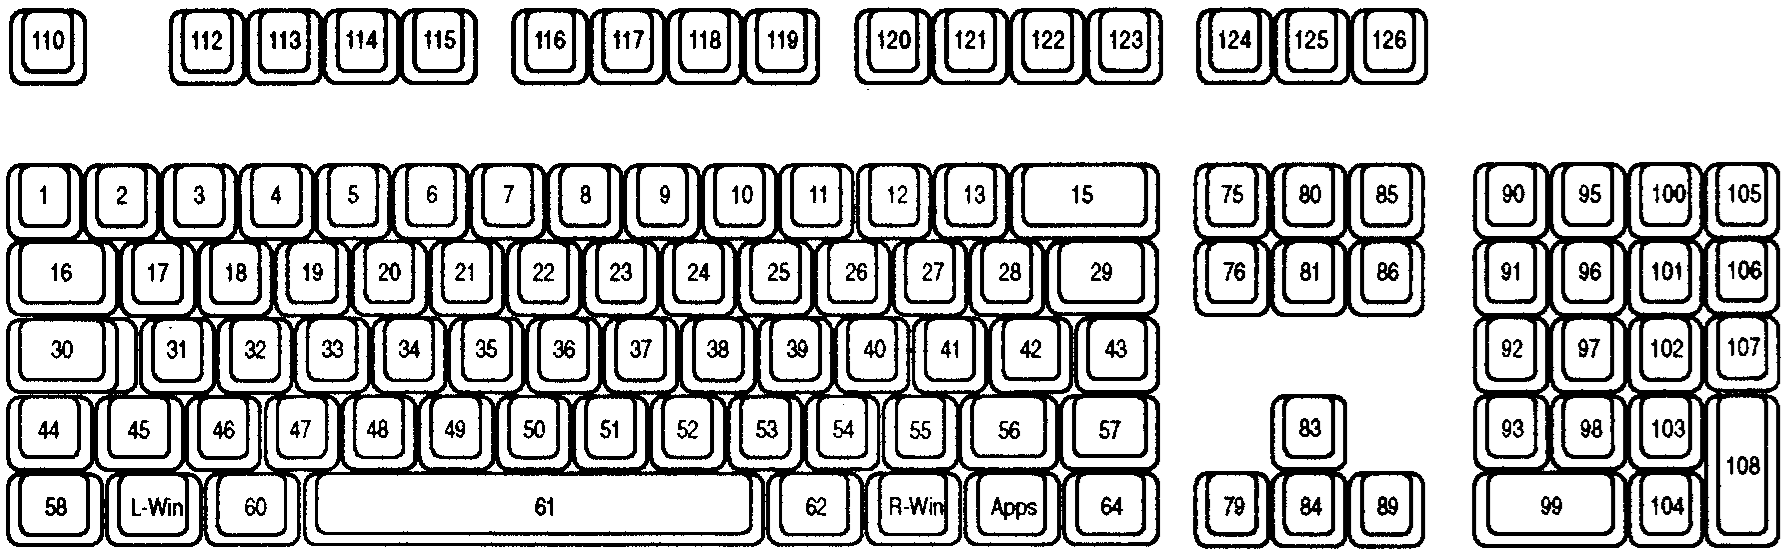 各キーのキー位置を持つ Type 4 キーボードの図。